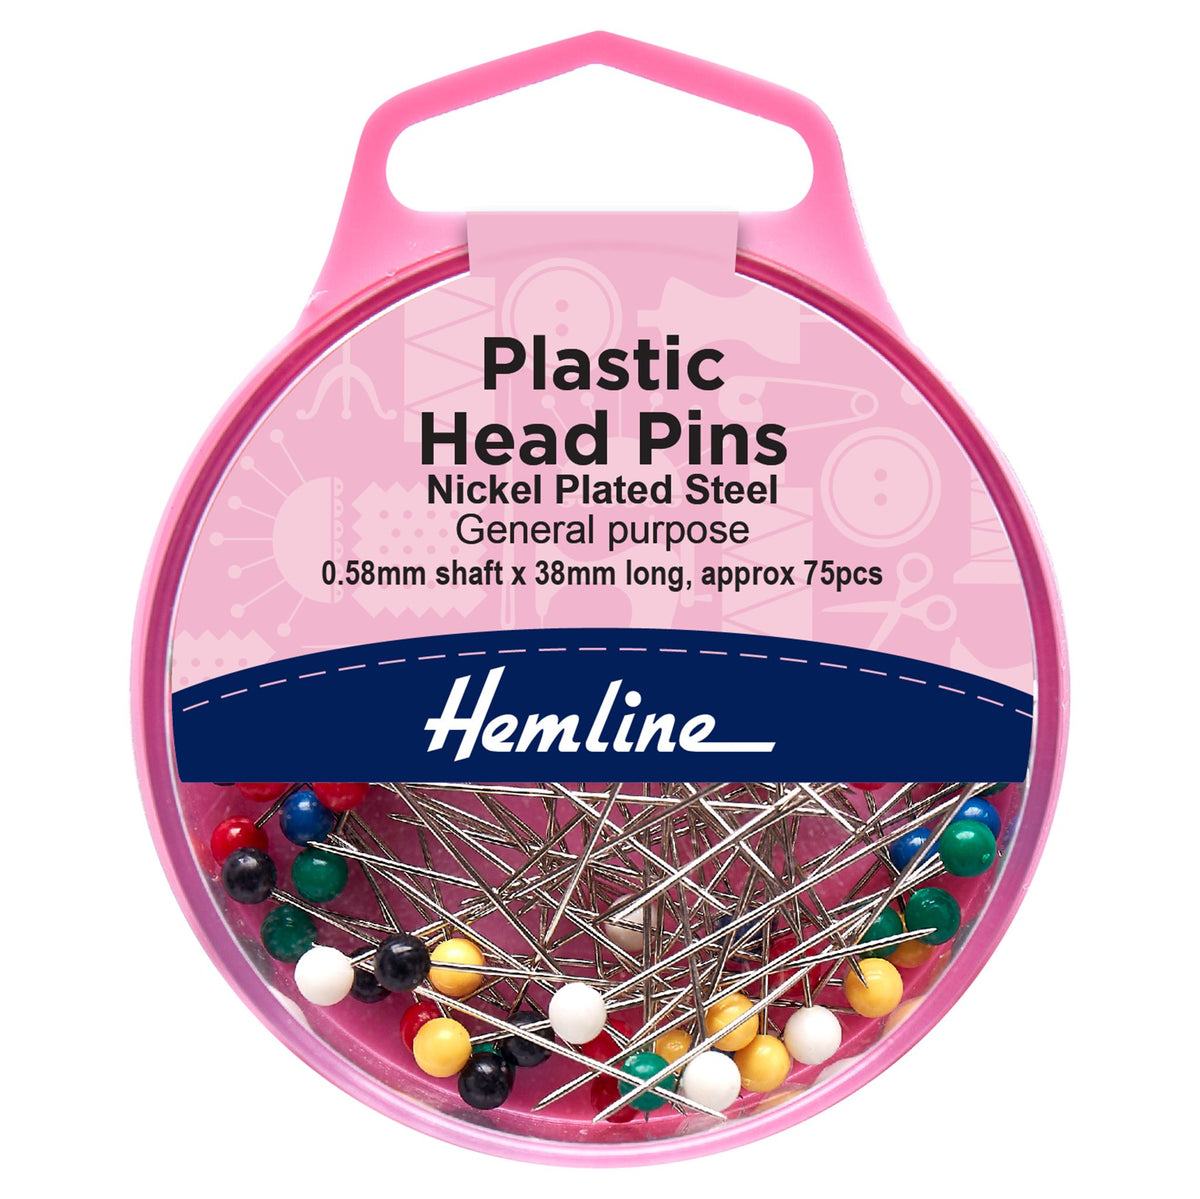 Plastic Head Sewing Pins - 0.58mm x 38mm (75pcs approx)